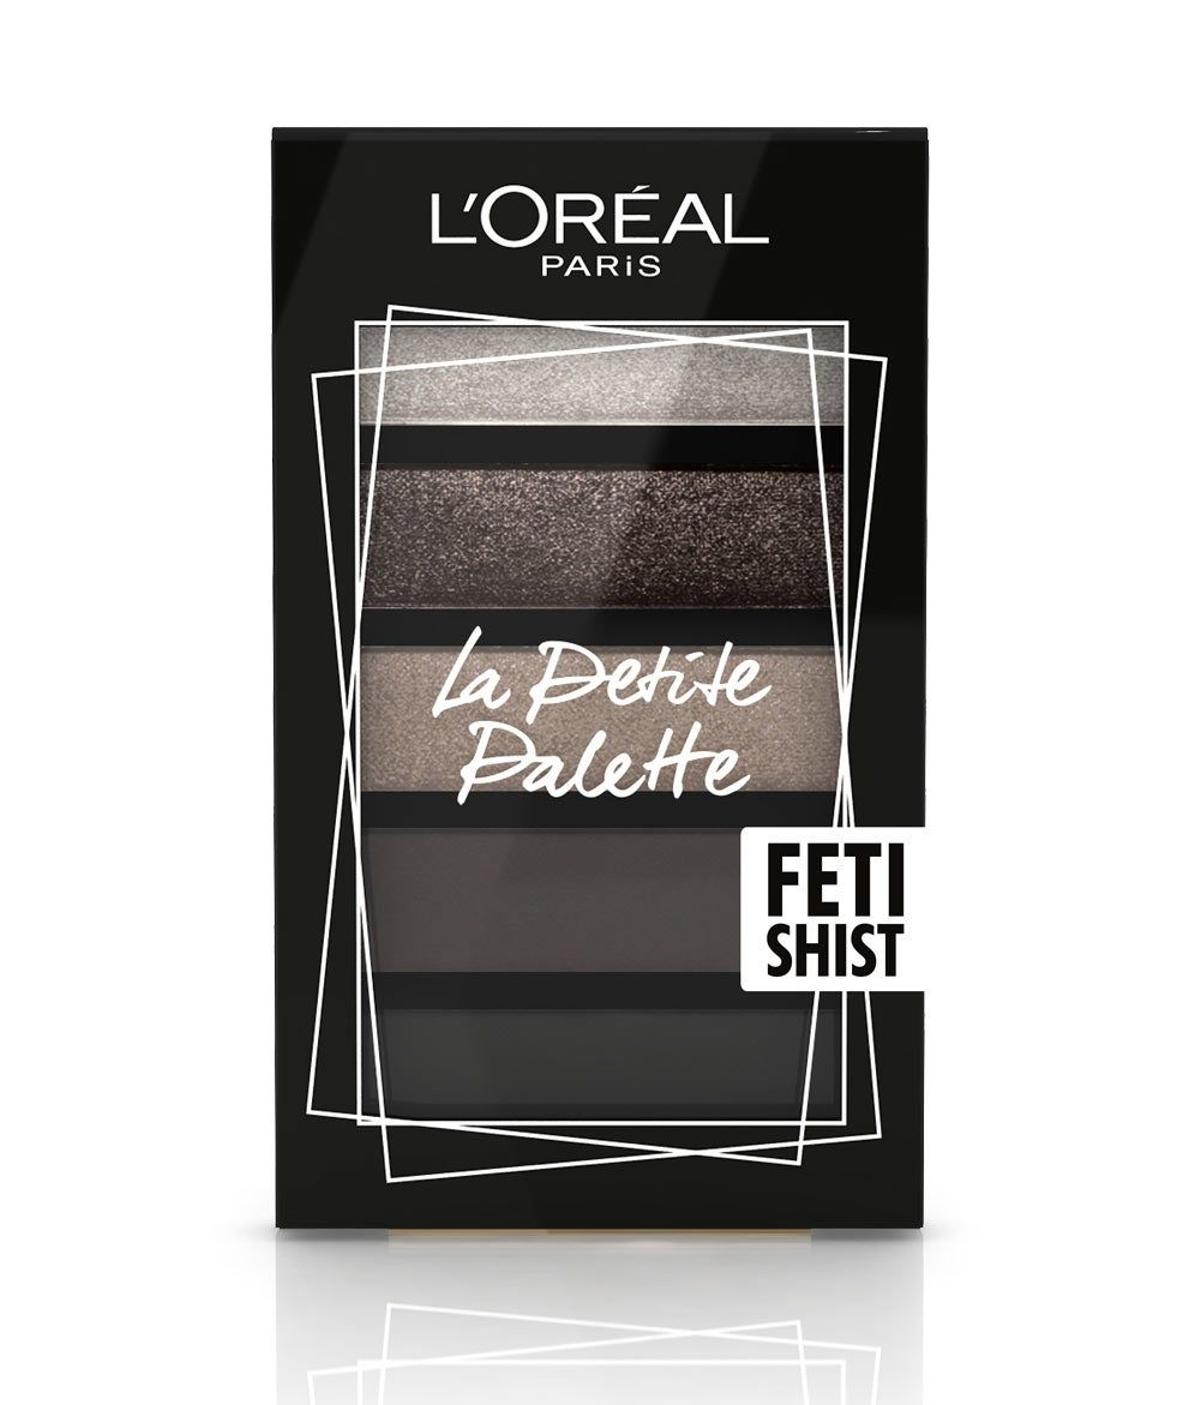 Sombras de ojos La Petite Palette Fetishist de L’Oréal Paris. (PVPR*: 12, 95 euros)